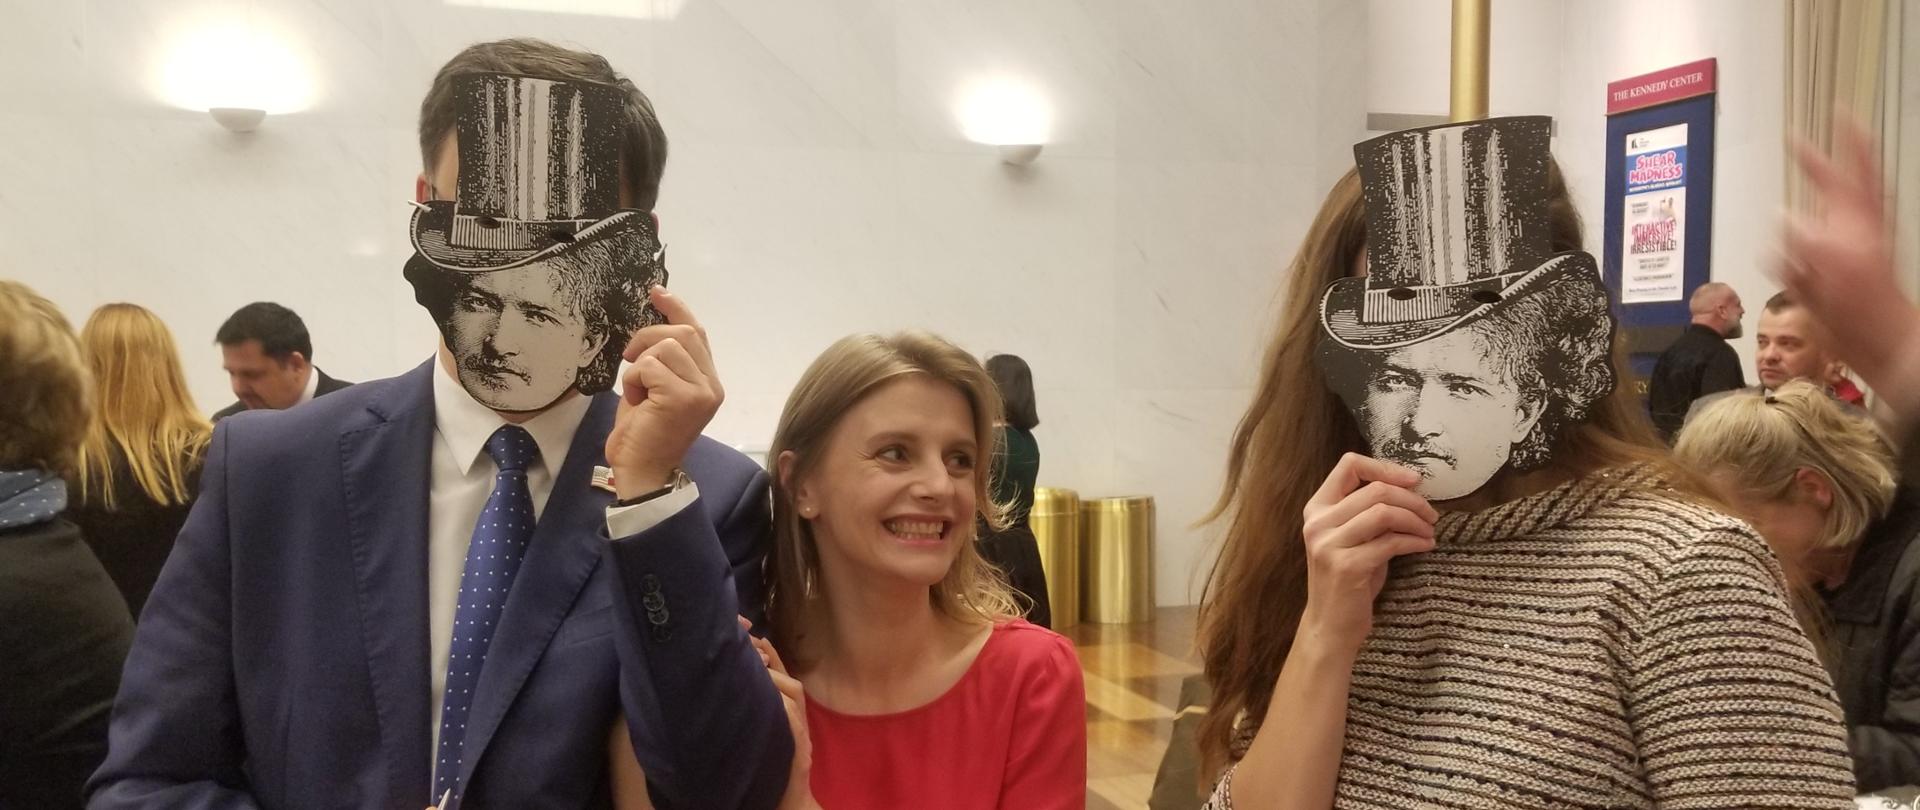 Troje widzów na przedstawieniu "3 Paderwskis". Dwoje z nich w maskach z wizerunkiem Paderewskiego